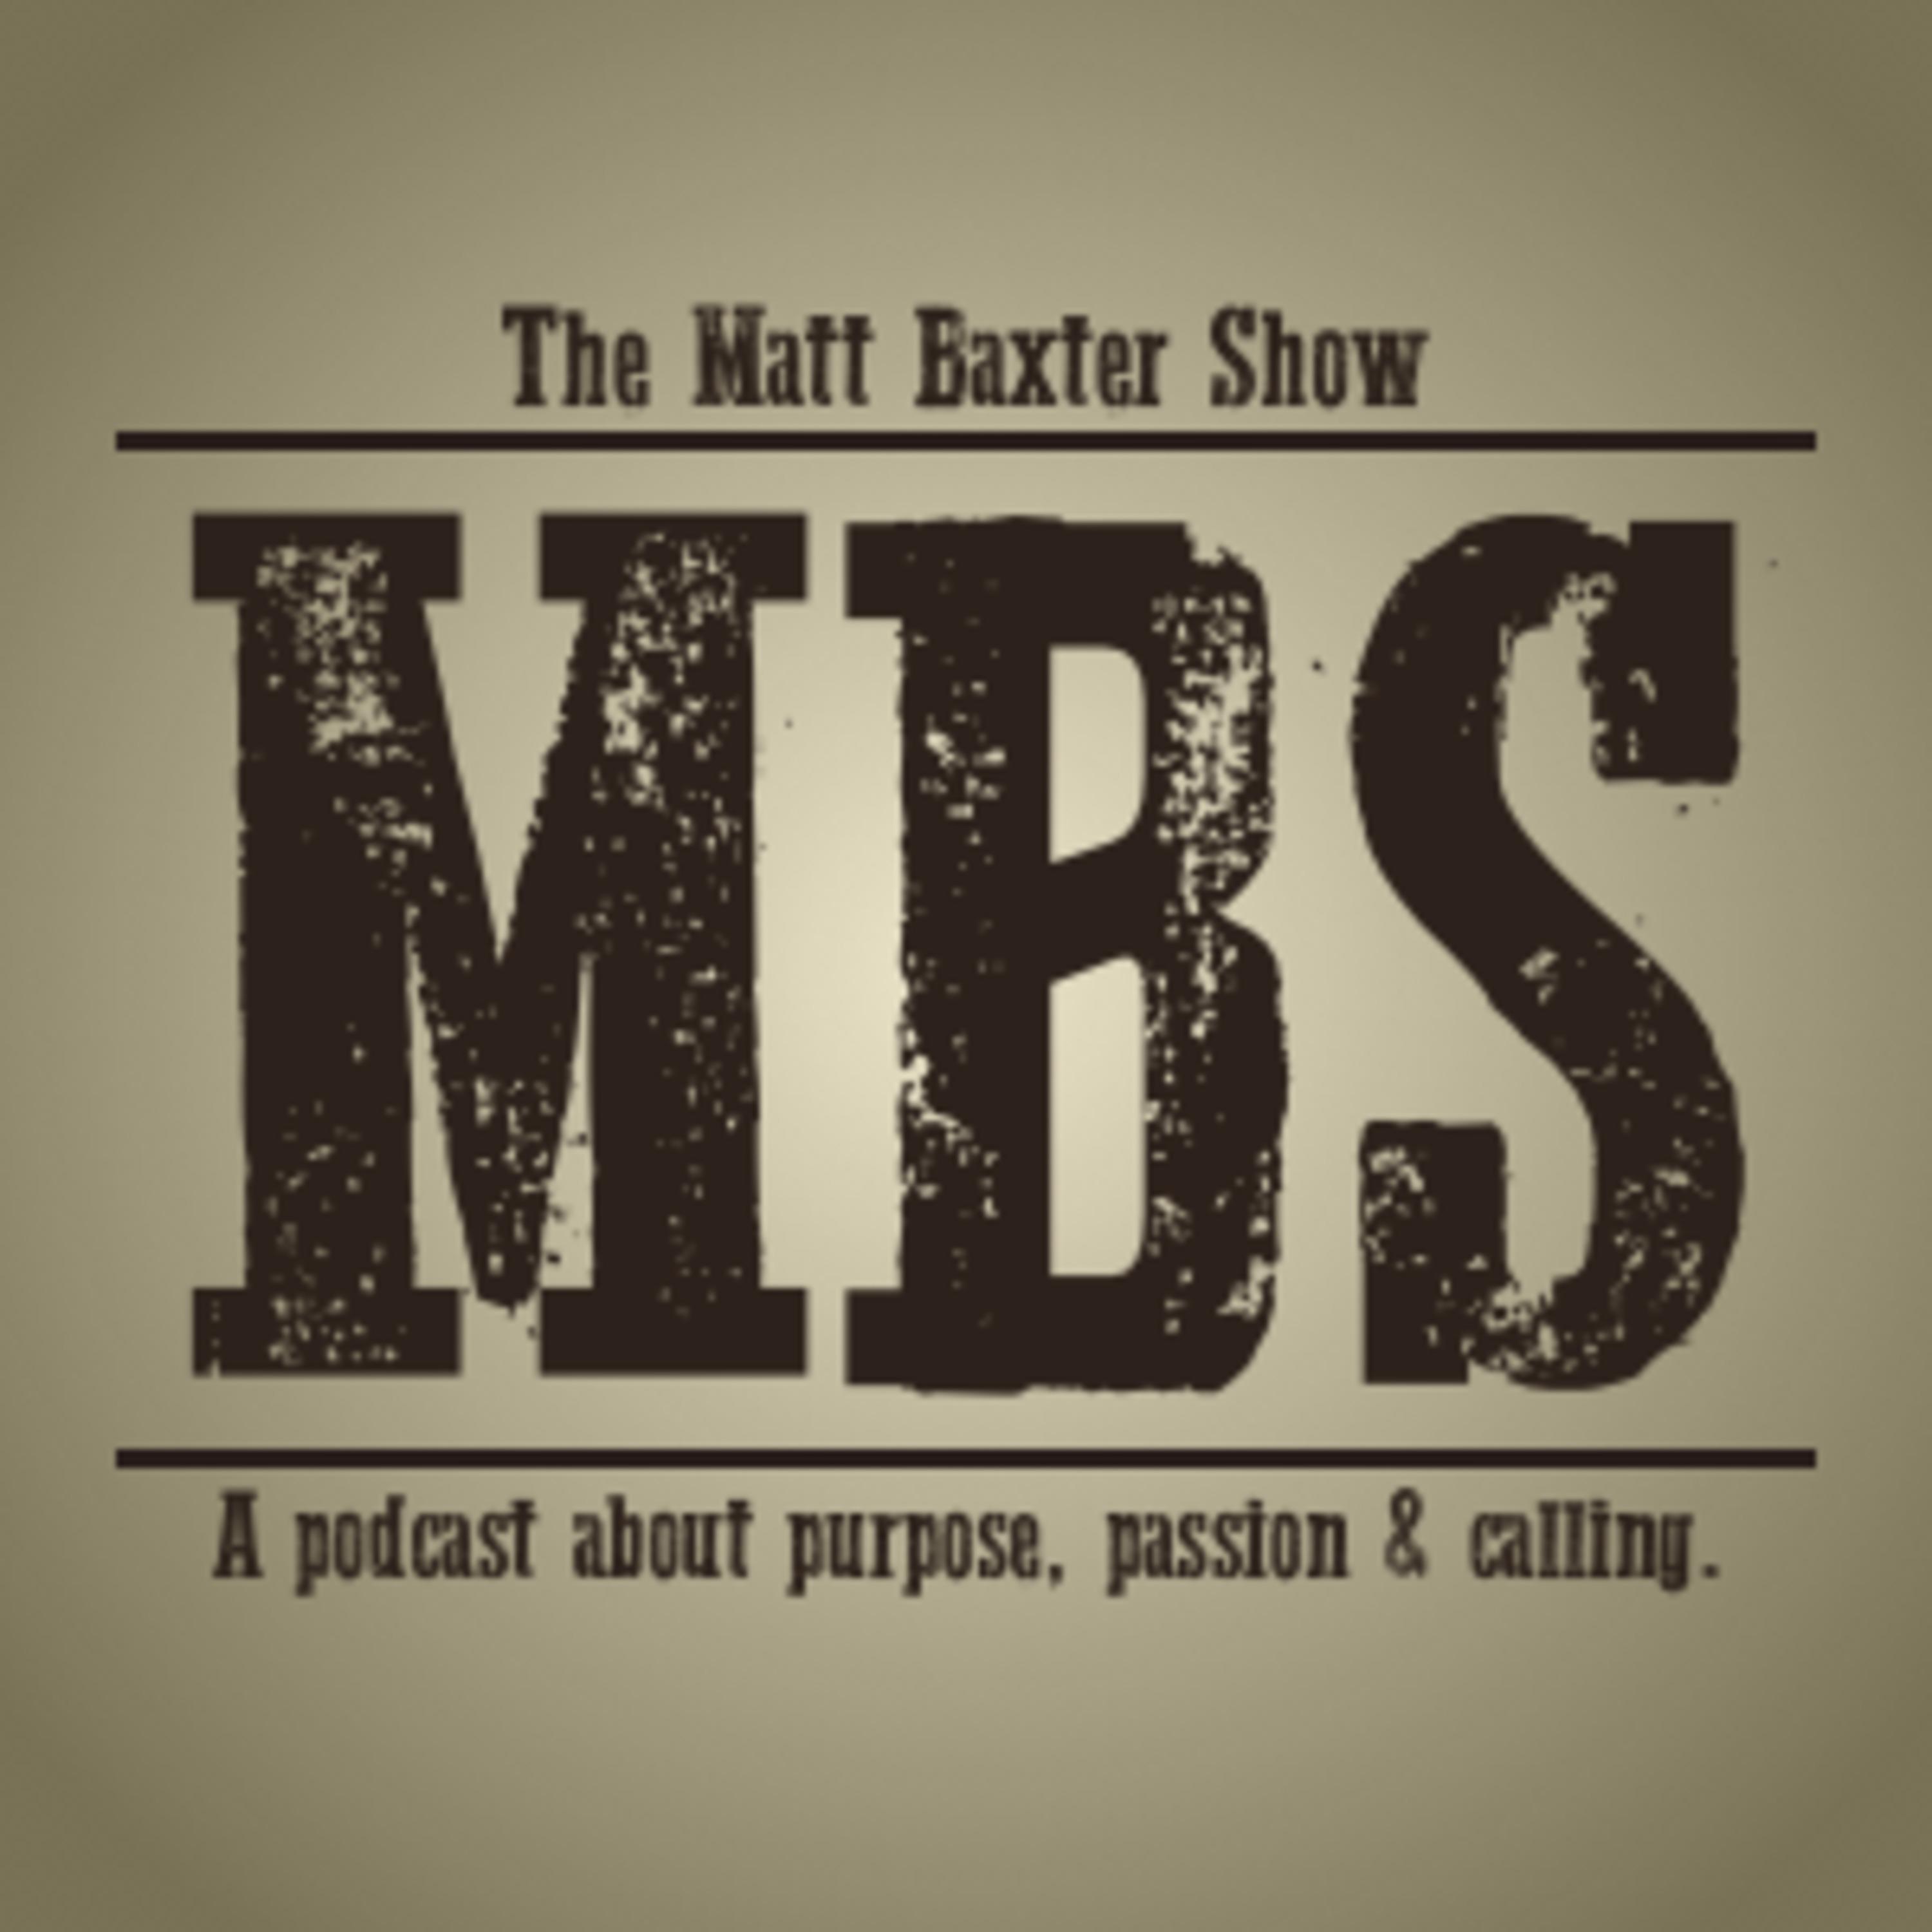 The Matt Baxter Show